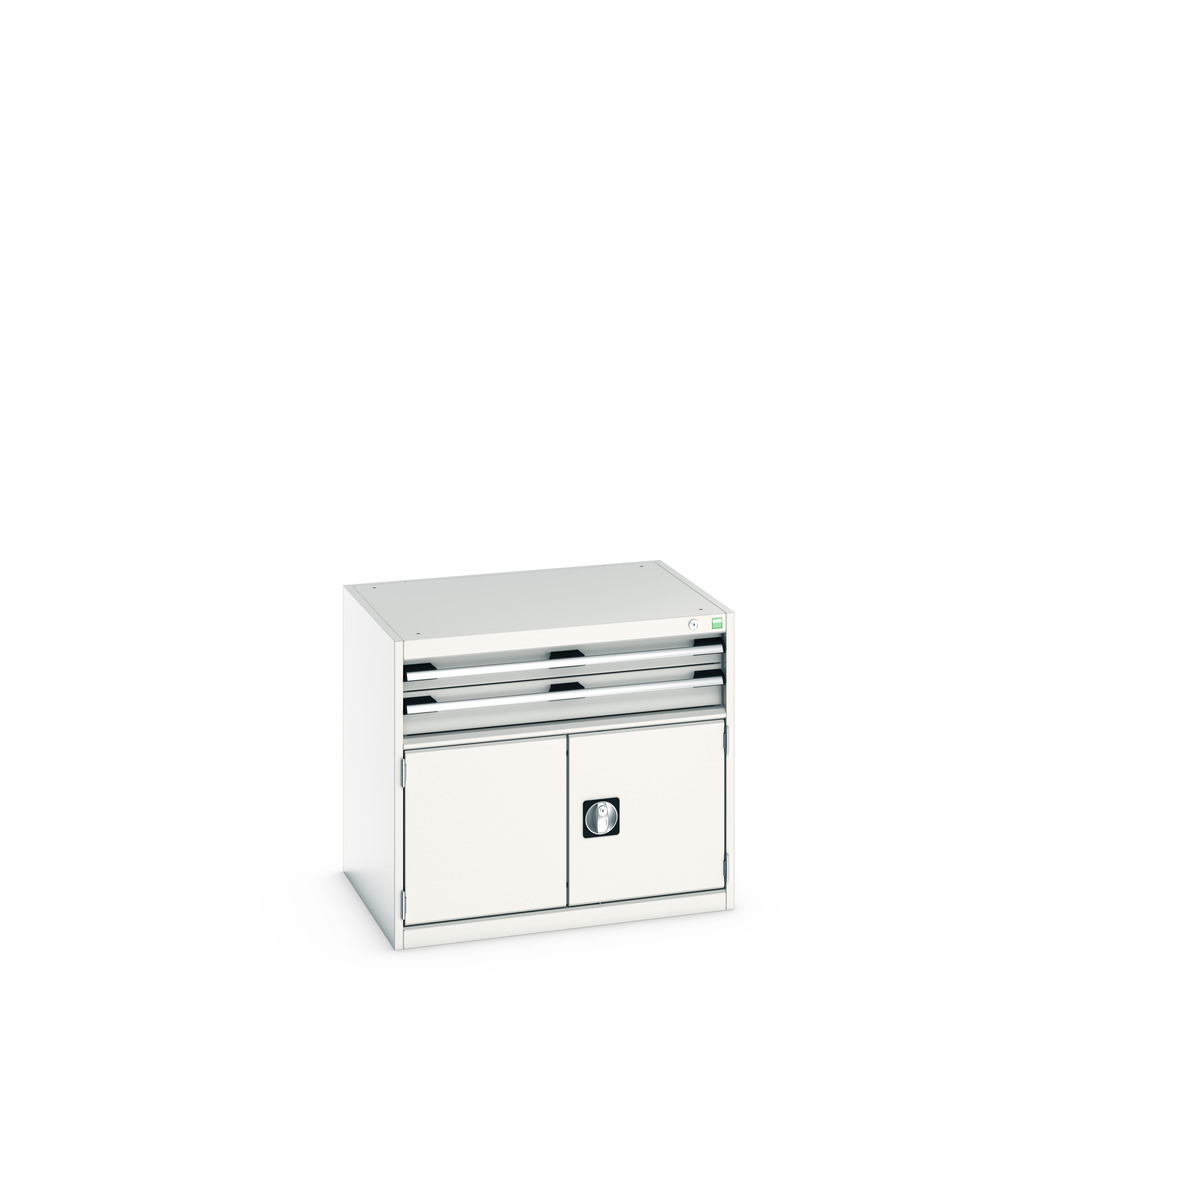 40020012.16V - cubio drawer-door cabinet